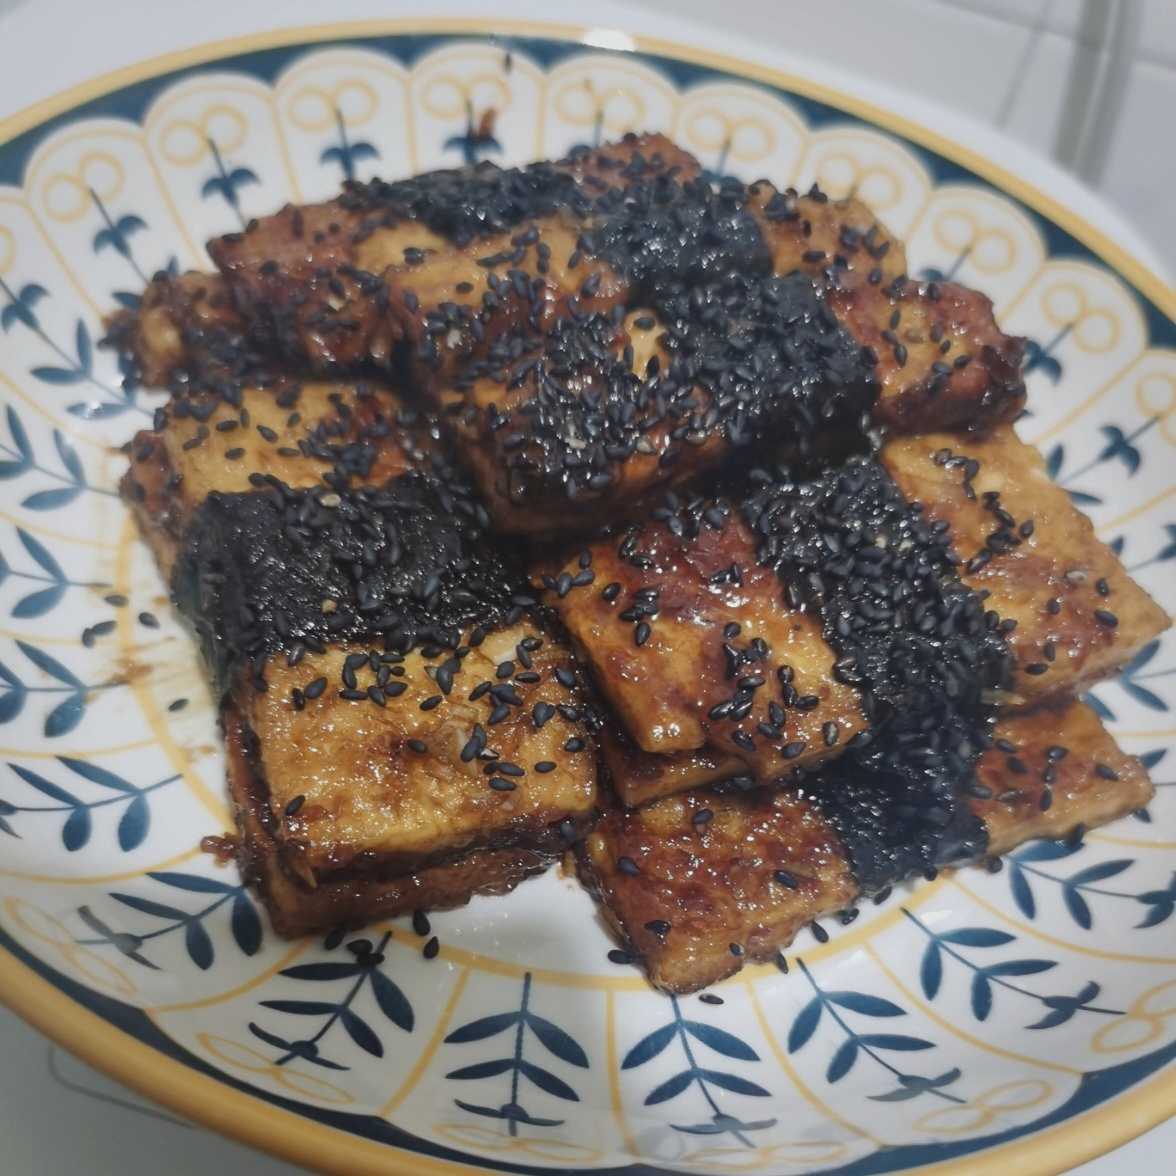 海苔卷豆腐浇汁烧